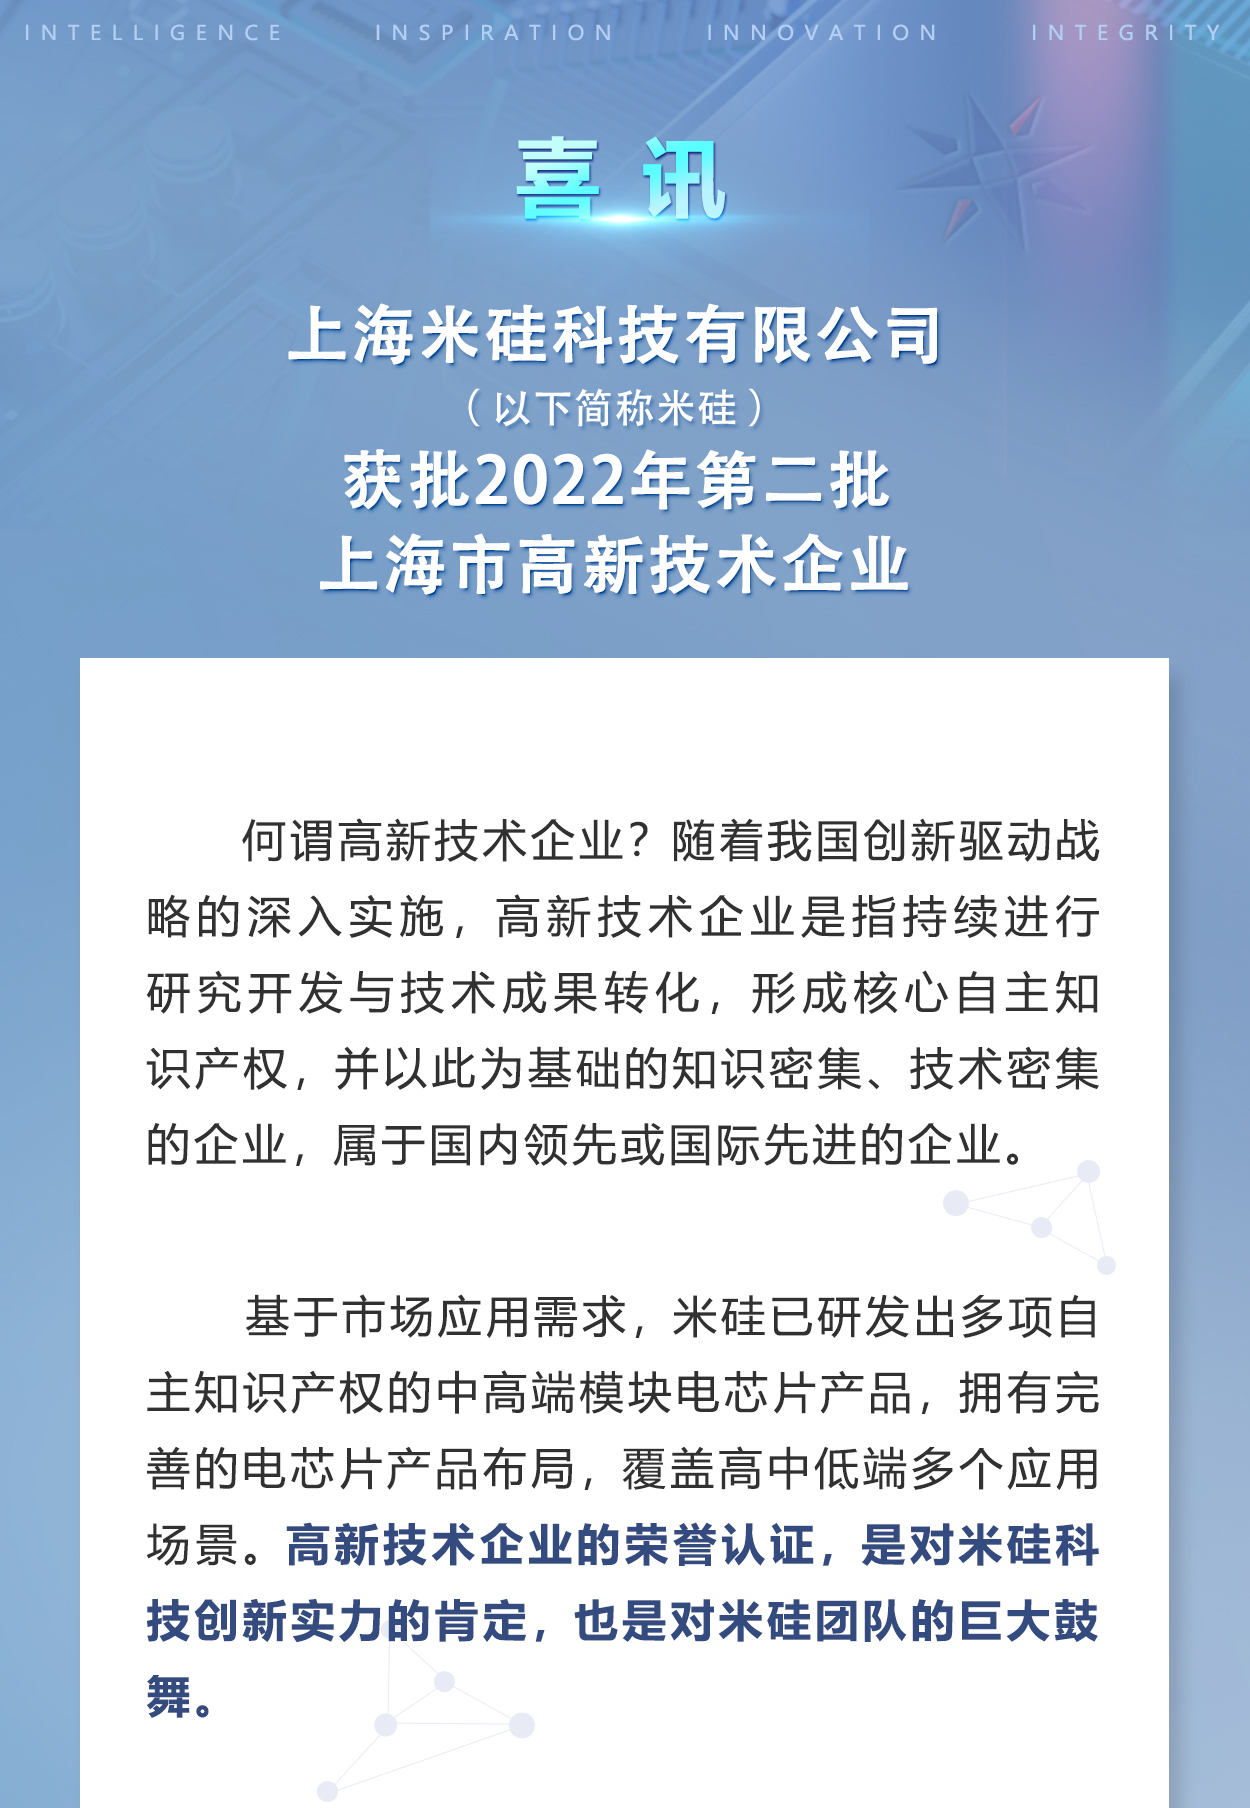 米硅科技获批上海市高新技术企业